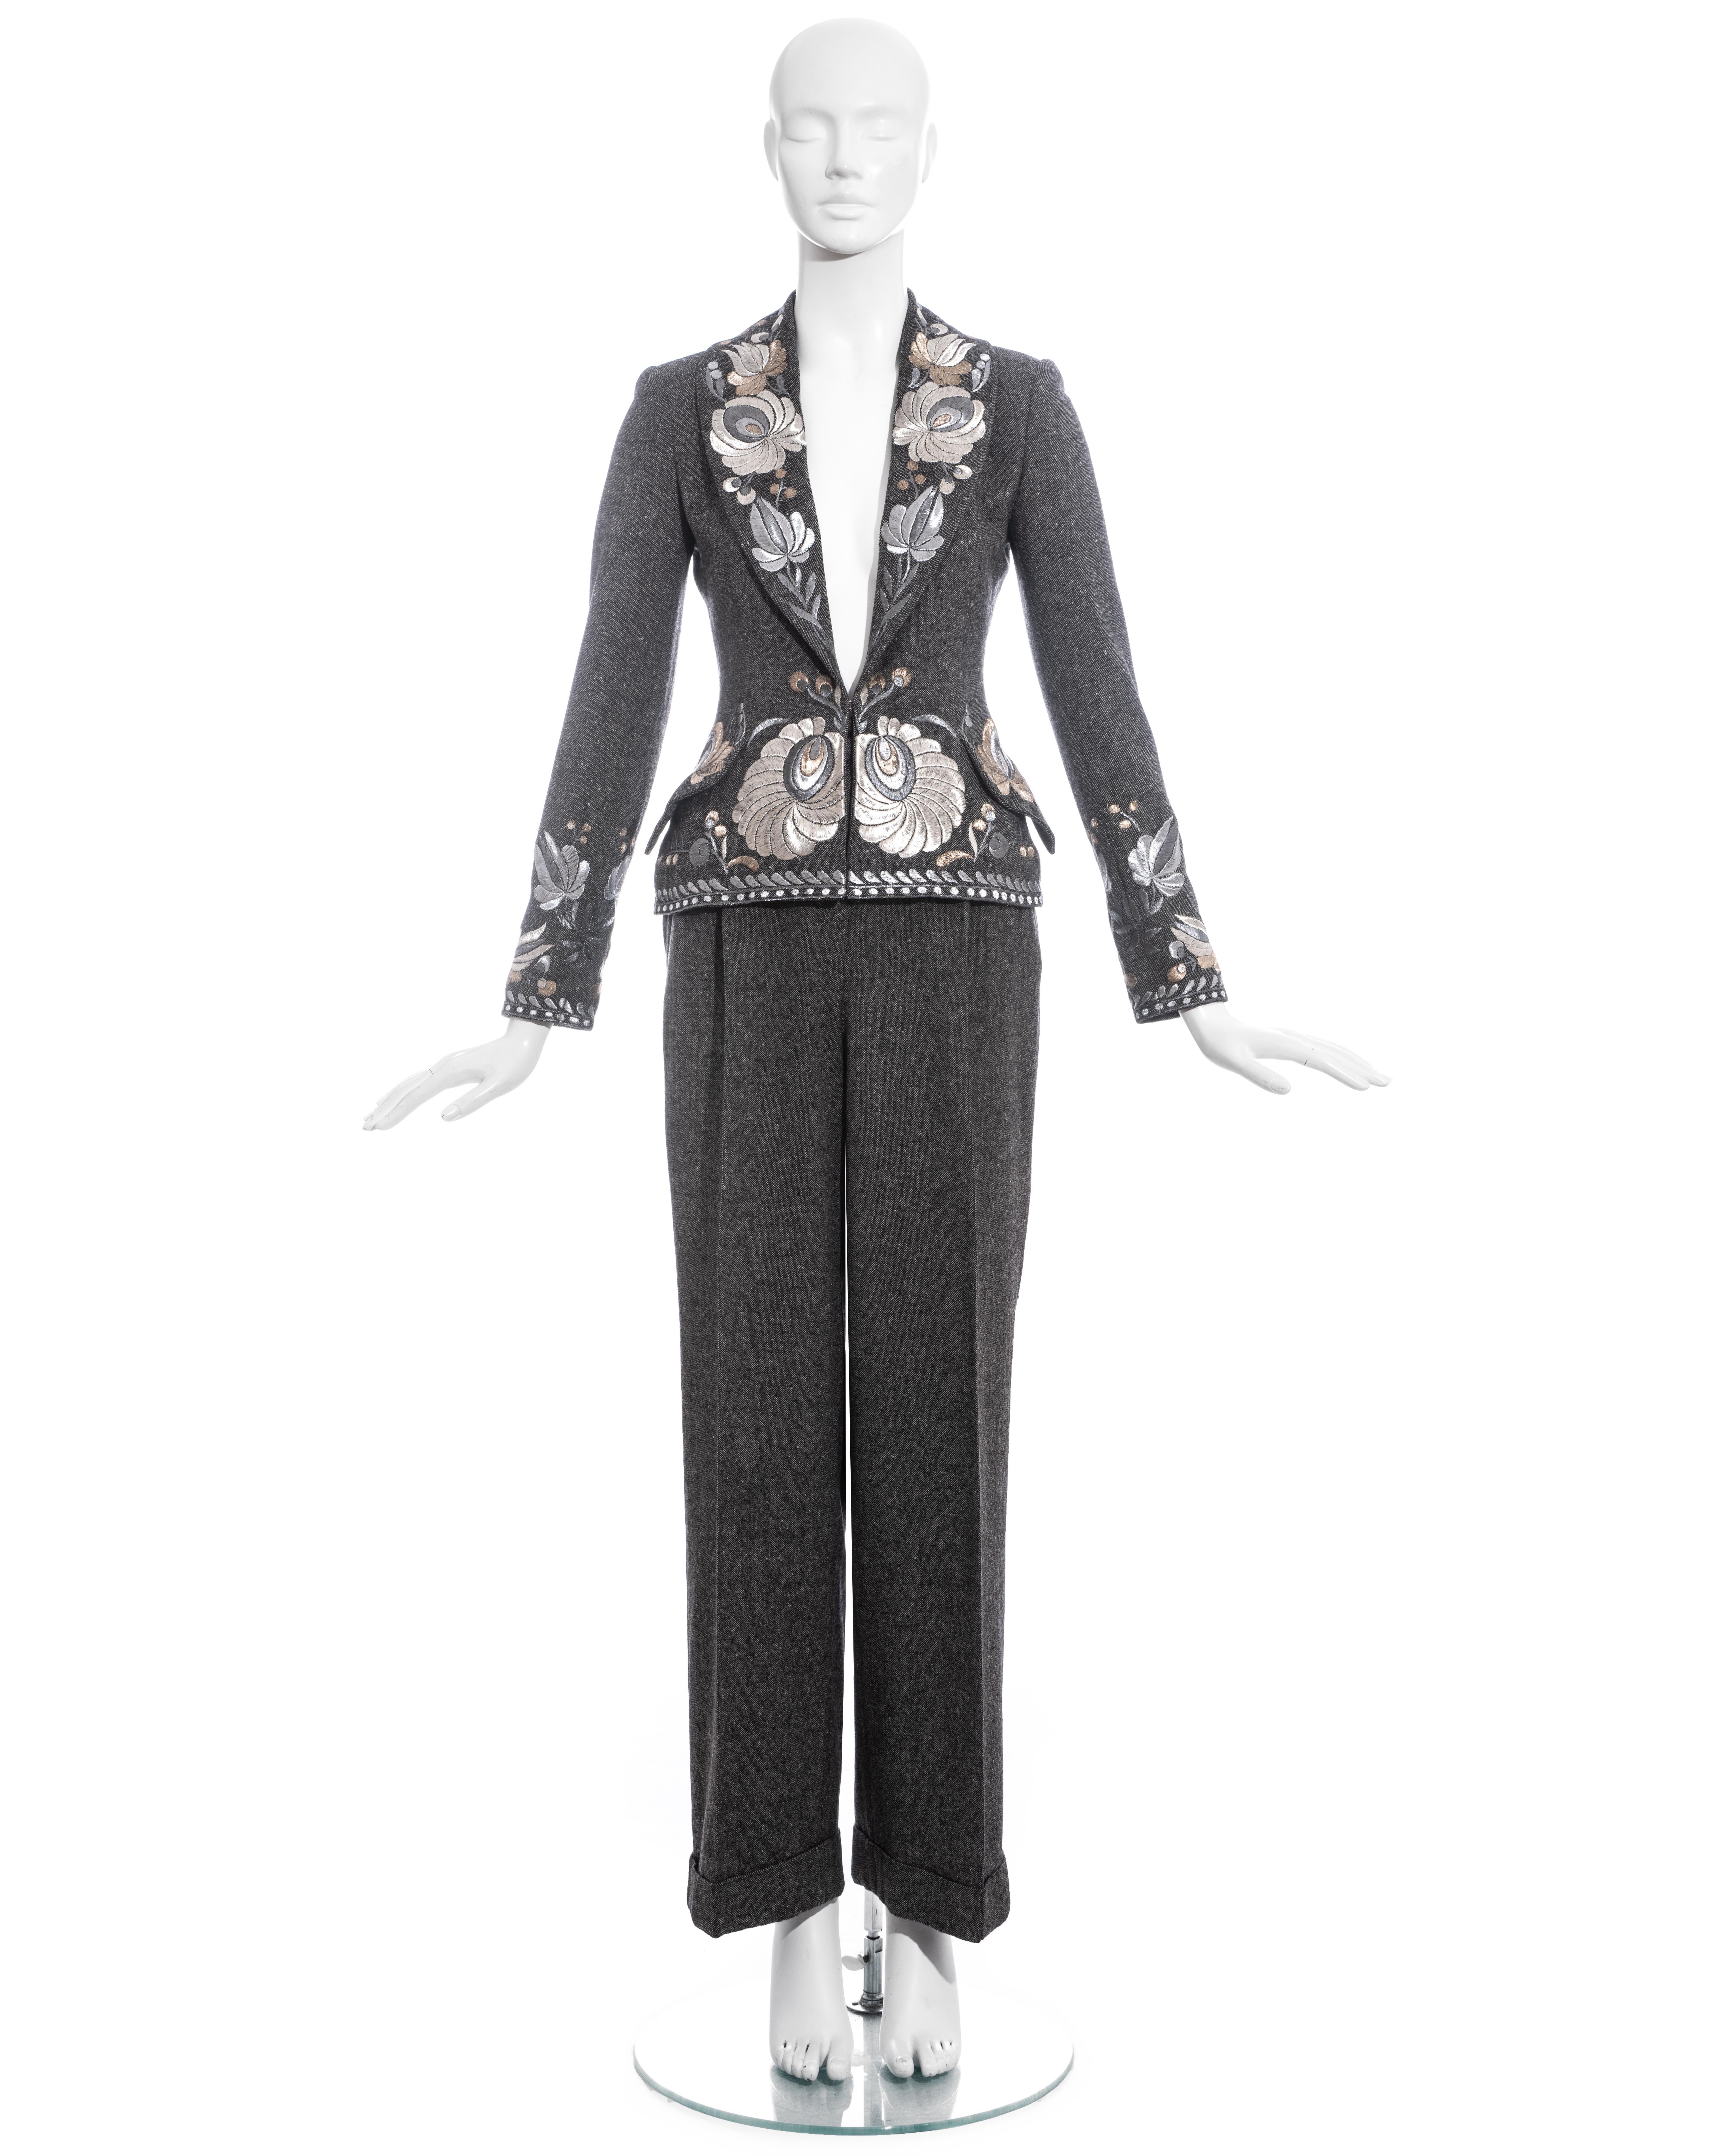 Costume pantalon en tweed Donegal gris Christian Dior by John Galliano comprenant : veste blazer ajustée avec broderie métallique argentée, revers châle, doublure en soie et fermeture à crochet sur le devant. Pantalon droit à taille haute avec